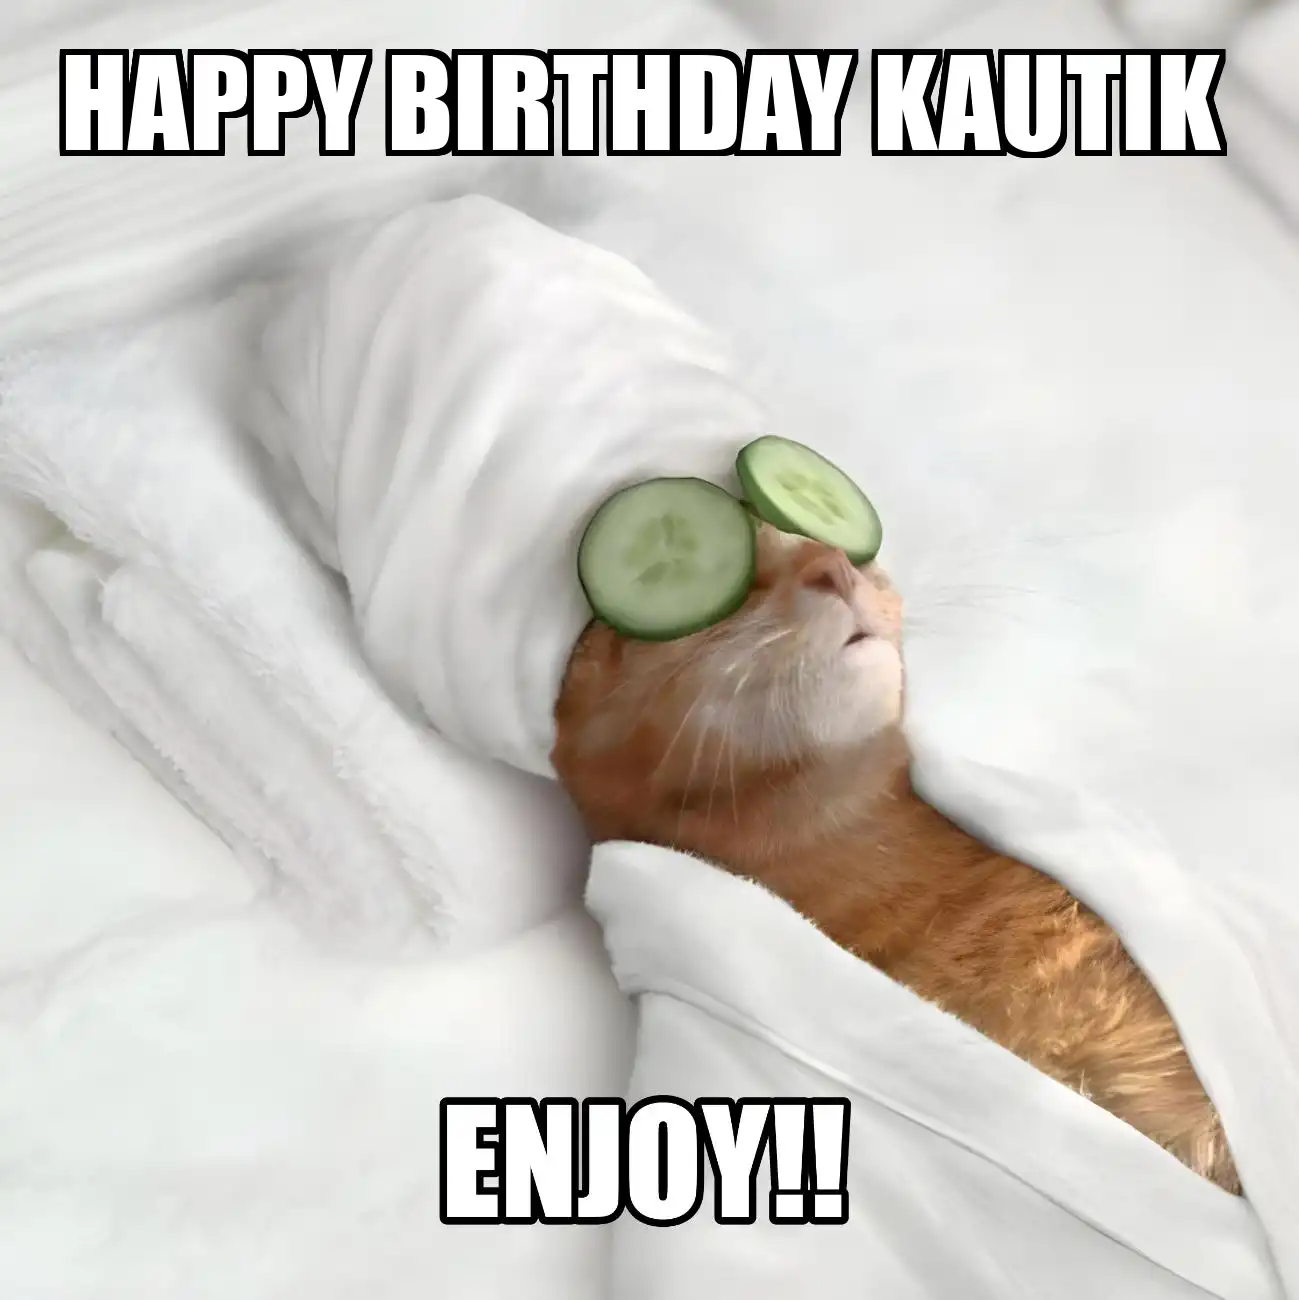 Happy Birthday Kautik Enjoy Cat Meme